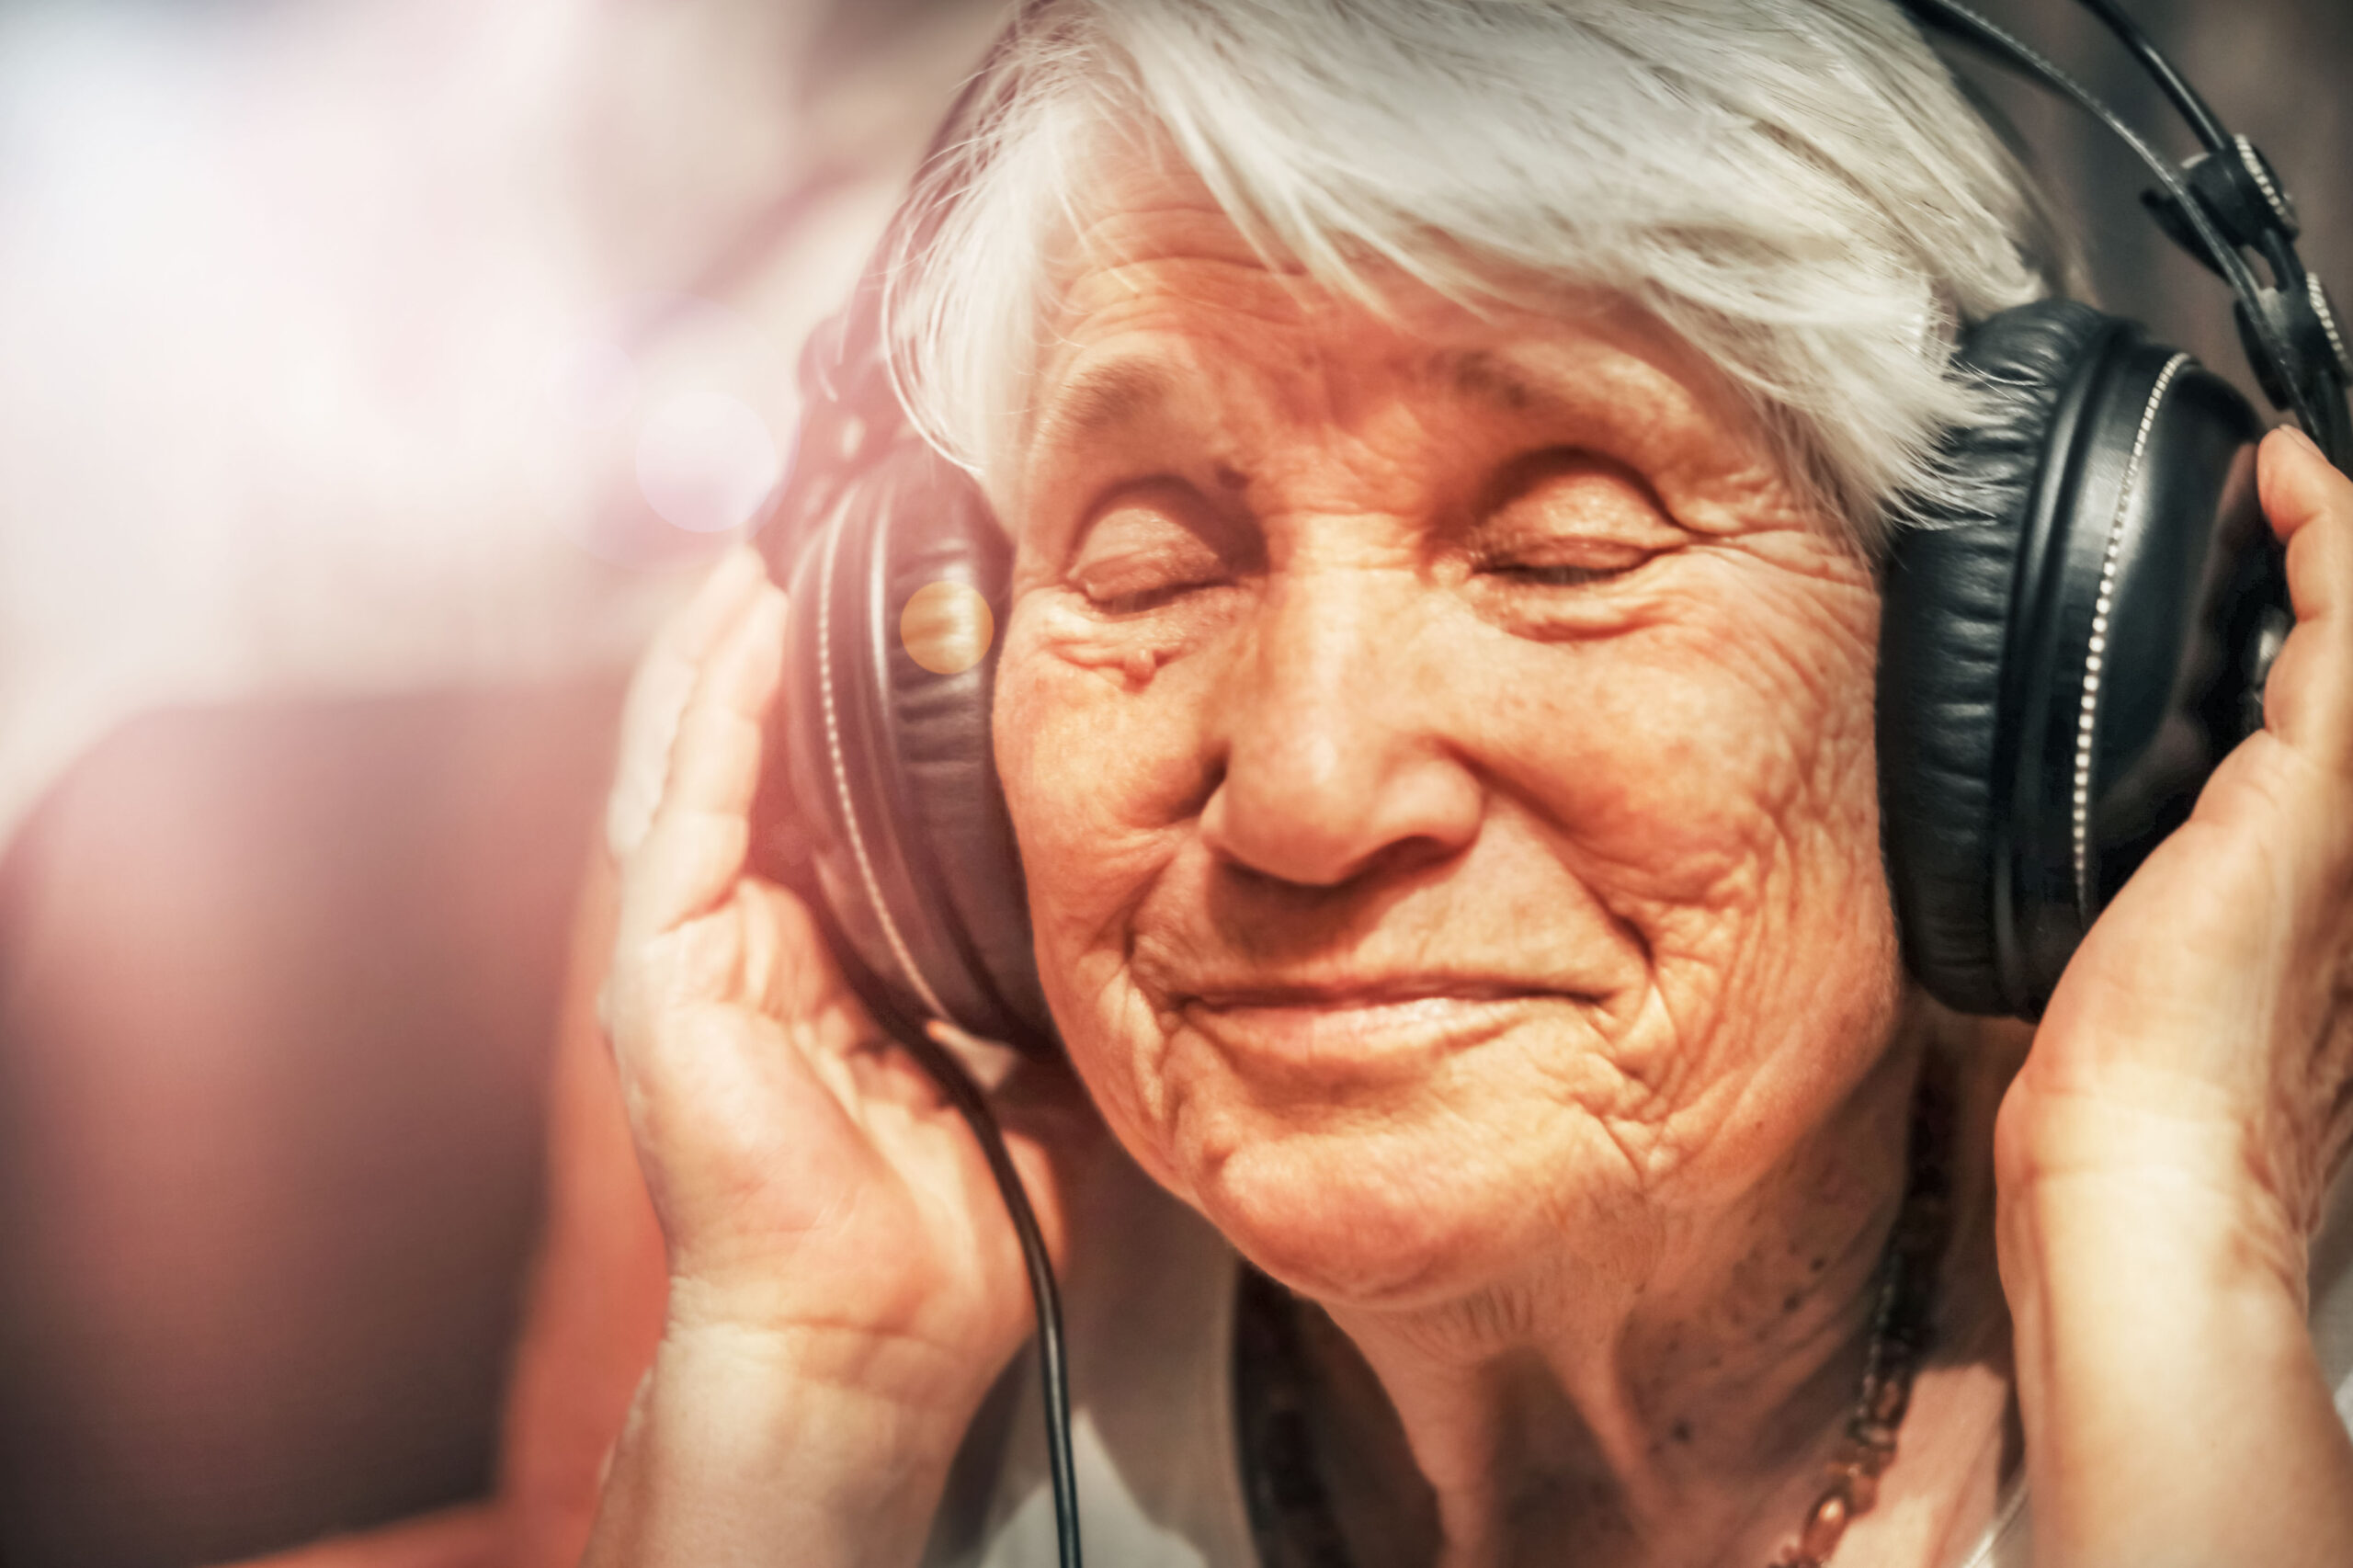 ældre kvinde nyder at høre musik - musik er blandt andet en glæde for mennesker med demens